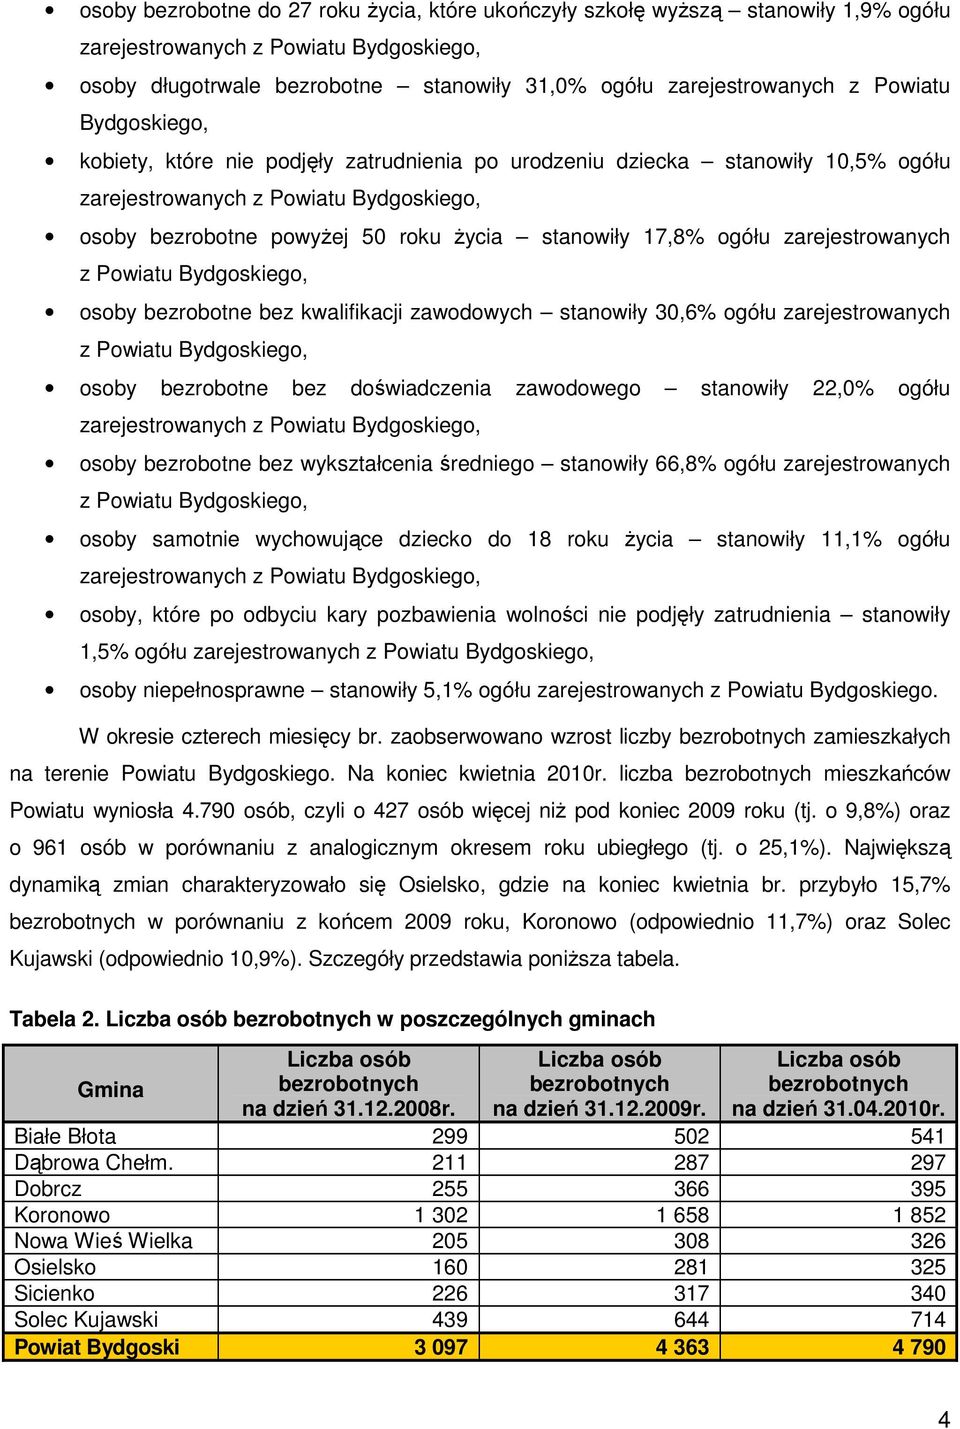 ogółu zarejestrowanych z Powiatu Bydgoskiego, osoby bezrobotne bez kwalifikacji zawodowych stanowiły 30,6% ogółu zarejestrowanych z Powiatu Bydgoskiego, osoby bezrobotne bez doświadczenia zawodowego